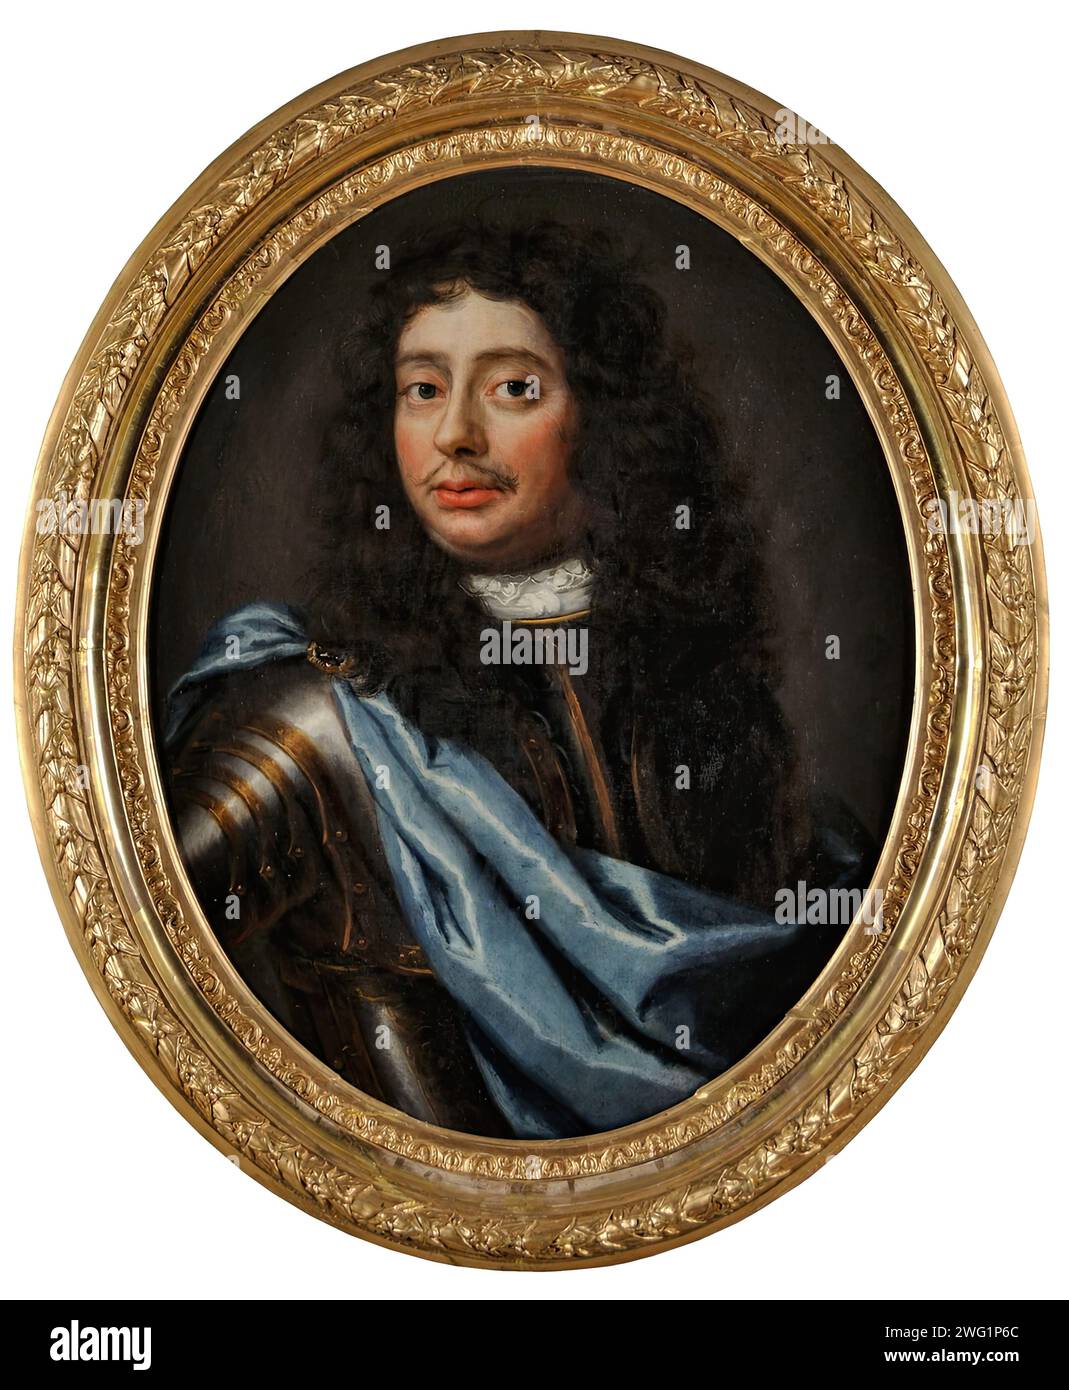 Malcolm Hamilton de Hageby, 1682. Buste ovale, portrait de Malcolm Hamilton de Hageby avec perruque longue sombre. Porter une armure avec un tissu bleu drapé. Banque D'Images